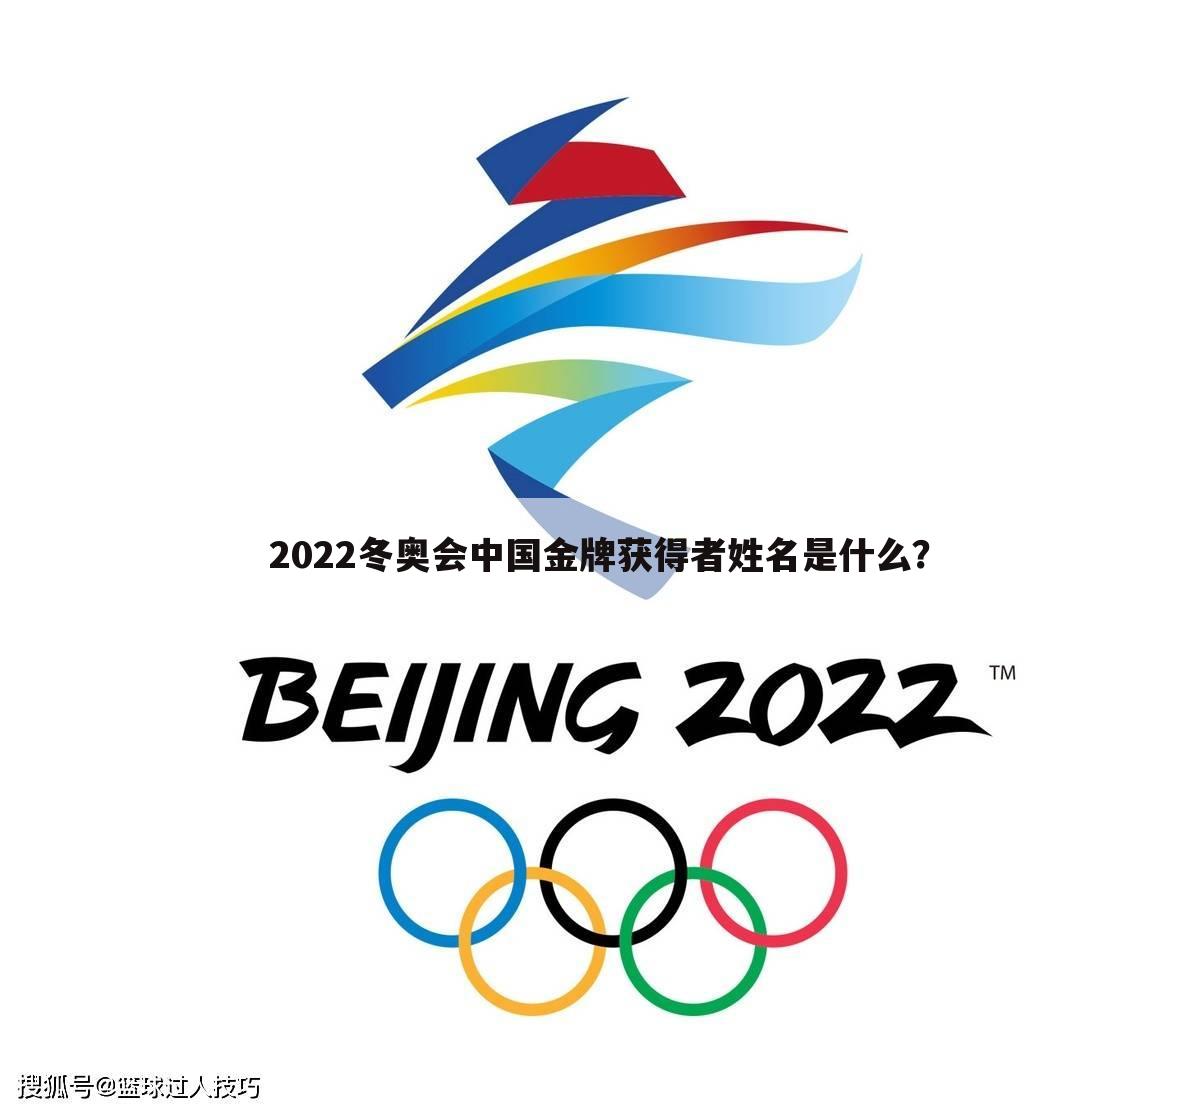 2022冬奥会中国金牌获得者姓名是什么？